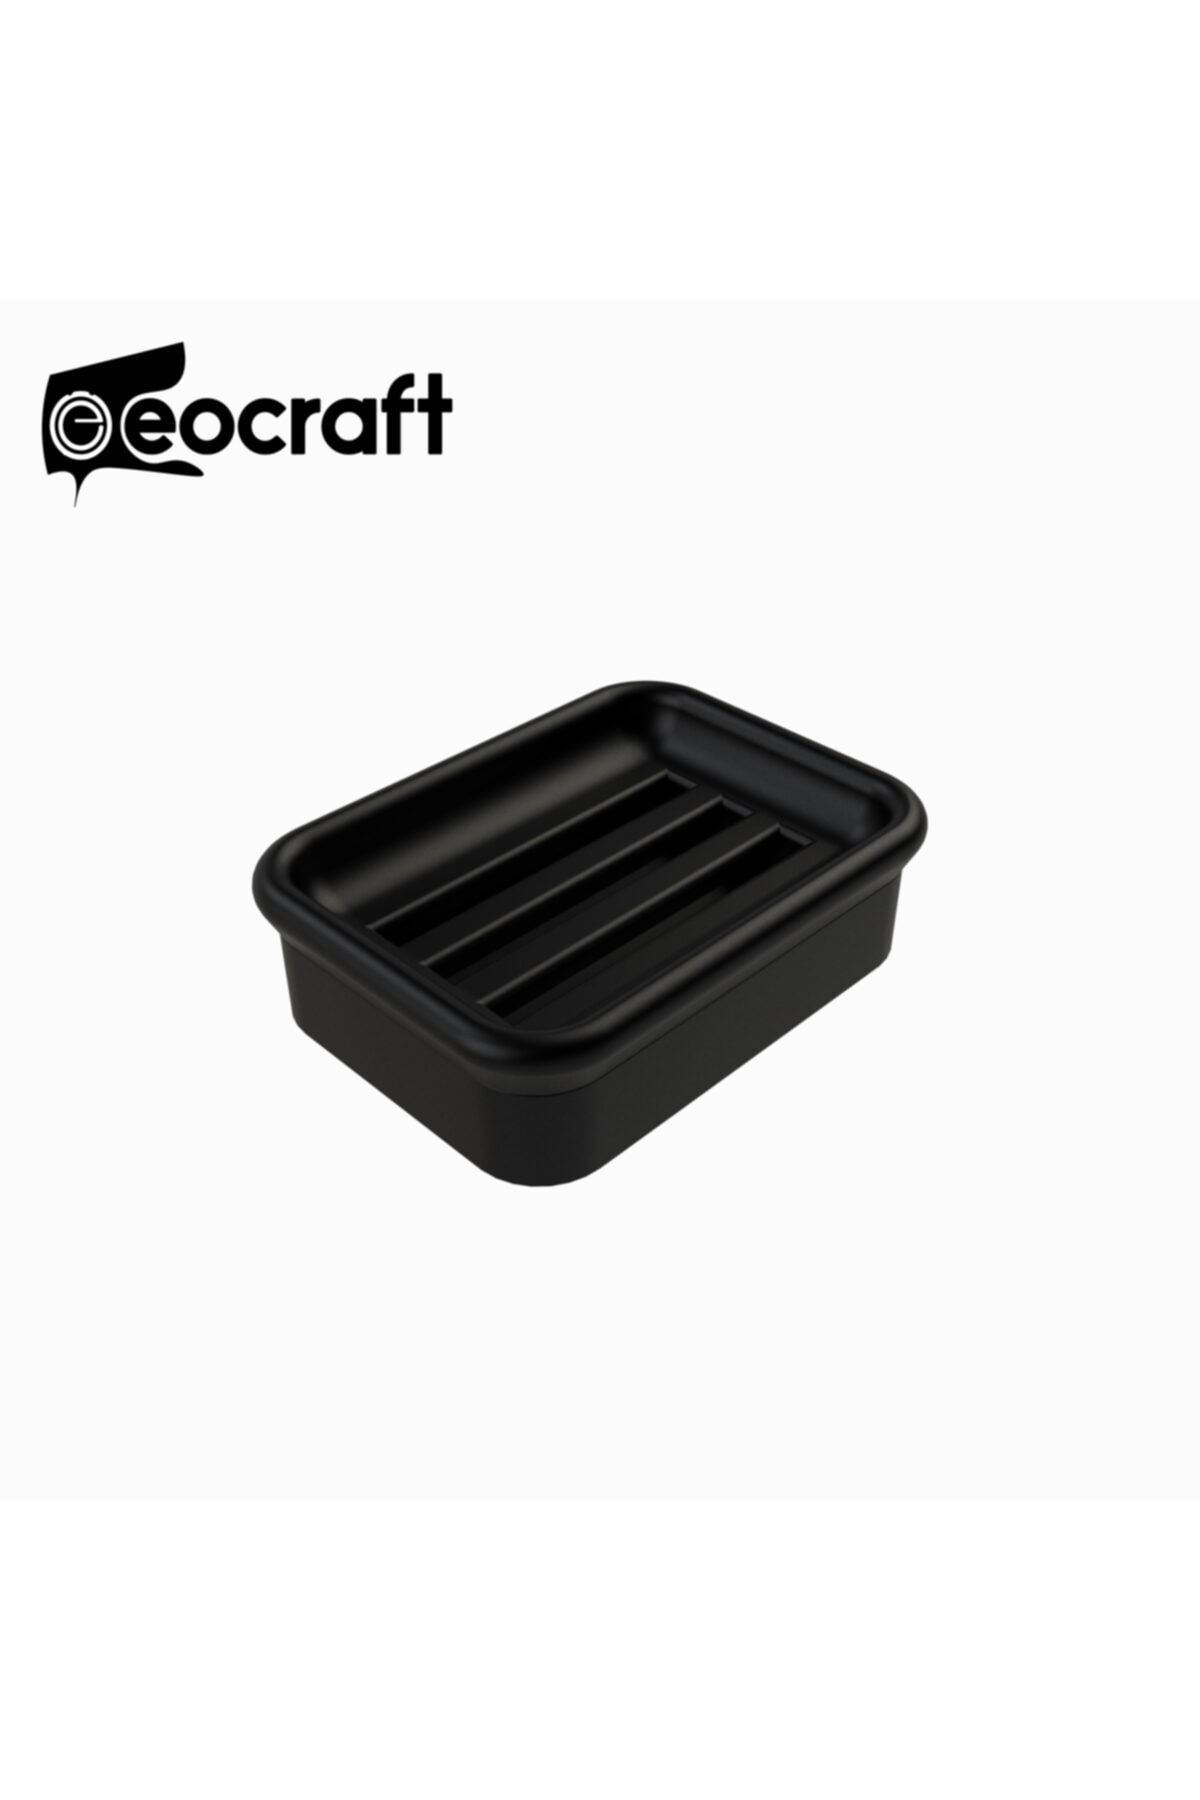 EOCRAFT Kompozit Granit Hazneli Katı Sabunluk Siyah